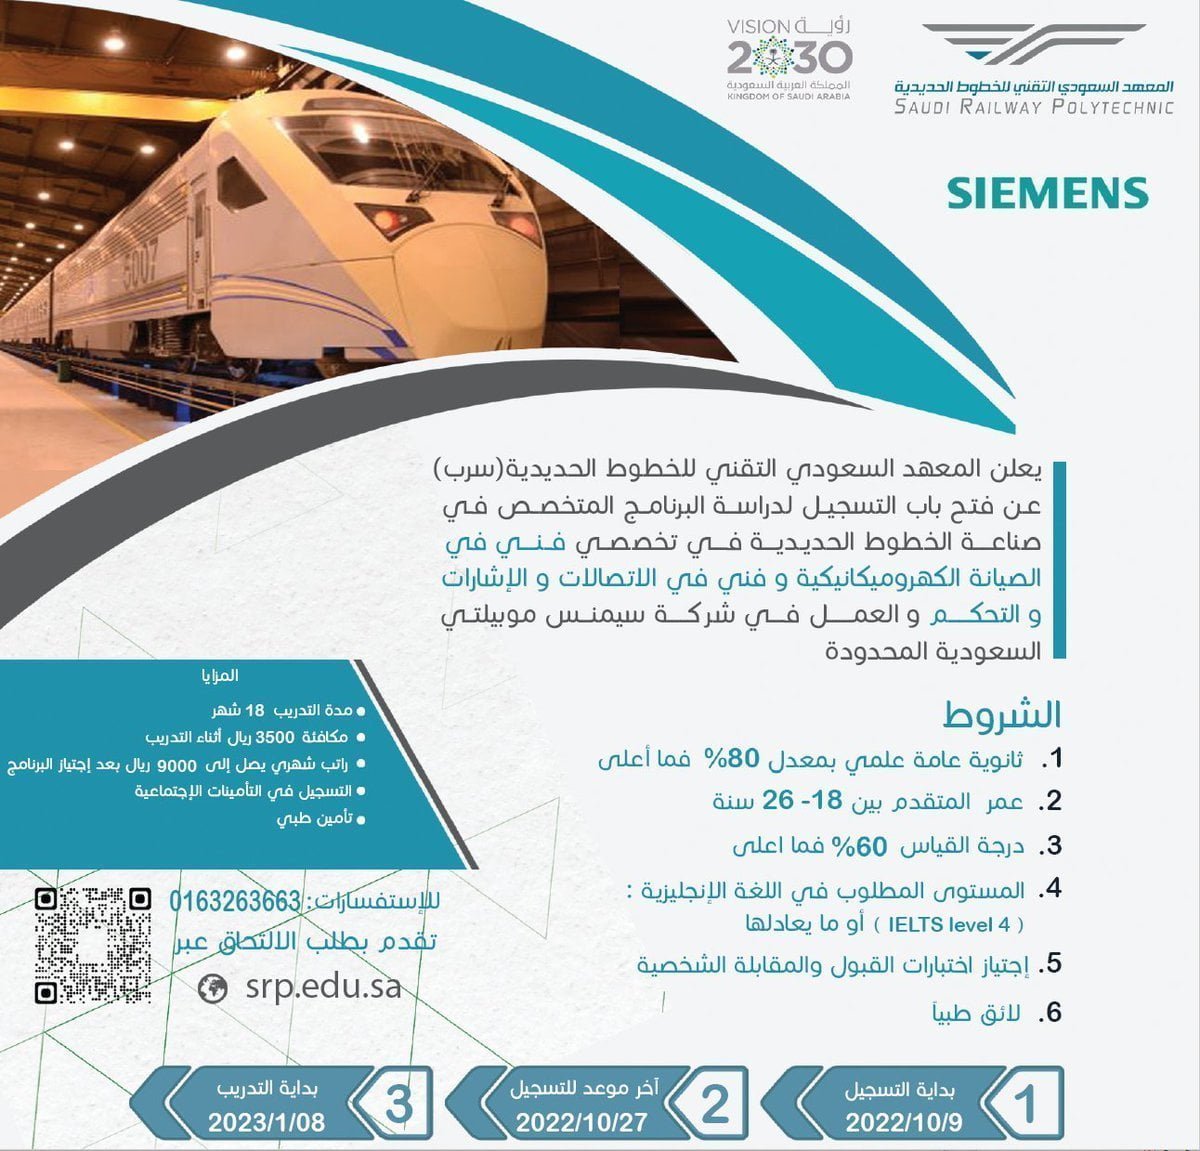 إعلان عن وظائف وتدريب في المعهد السعودي التقني للخطوط الحديدية